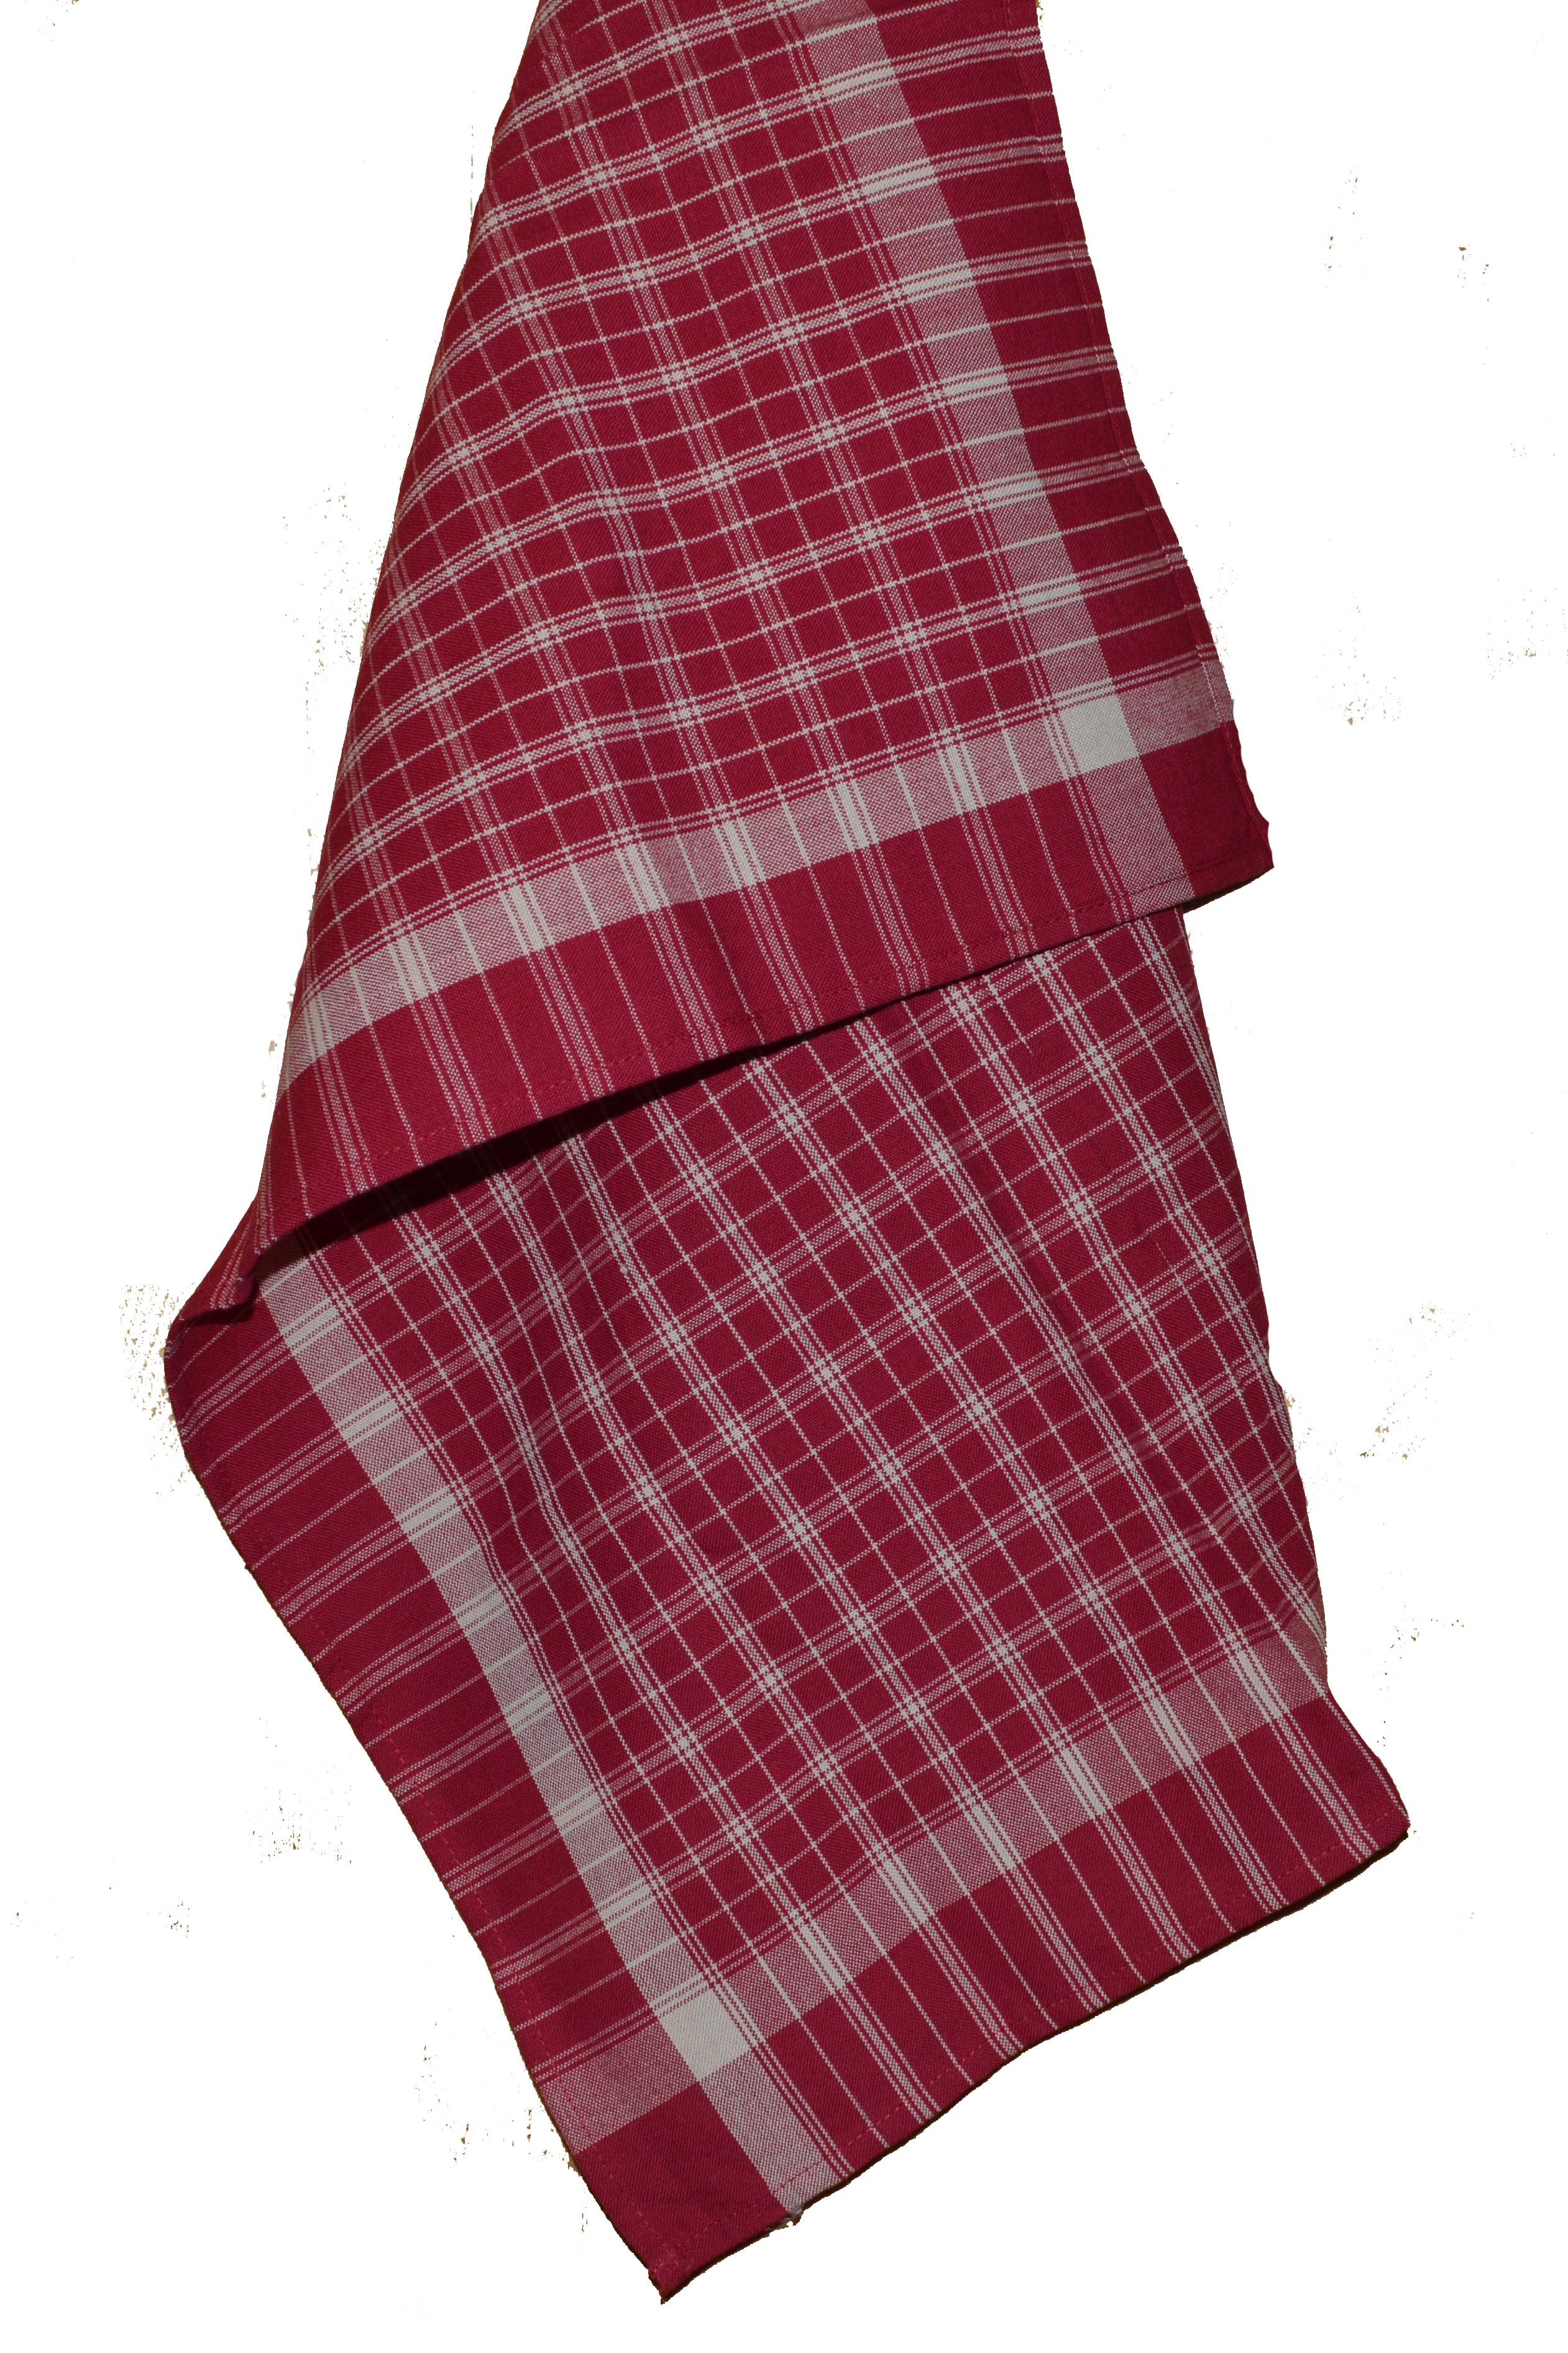 Dunroven House Plain Weave Tea Towel 20x28 Cranberry